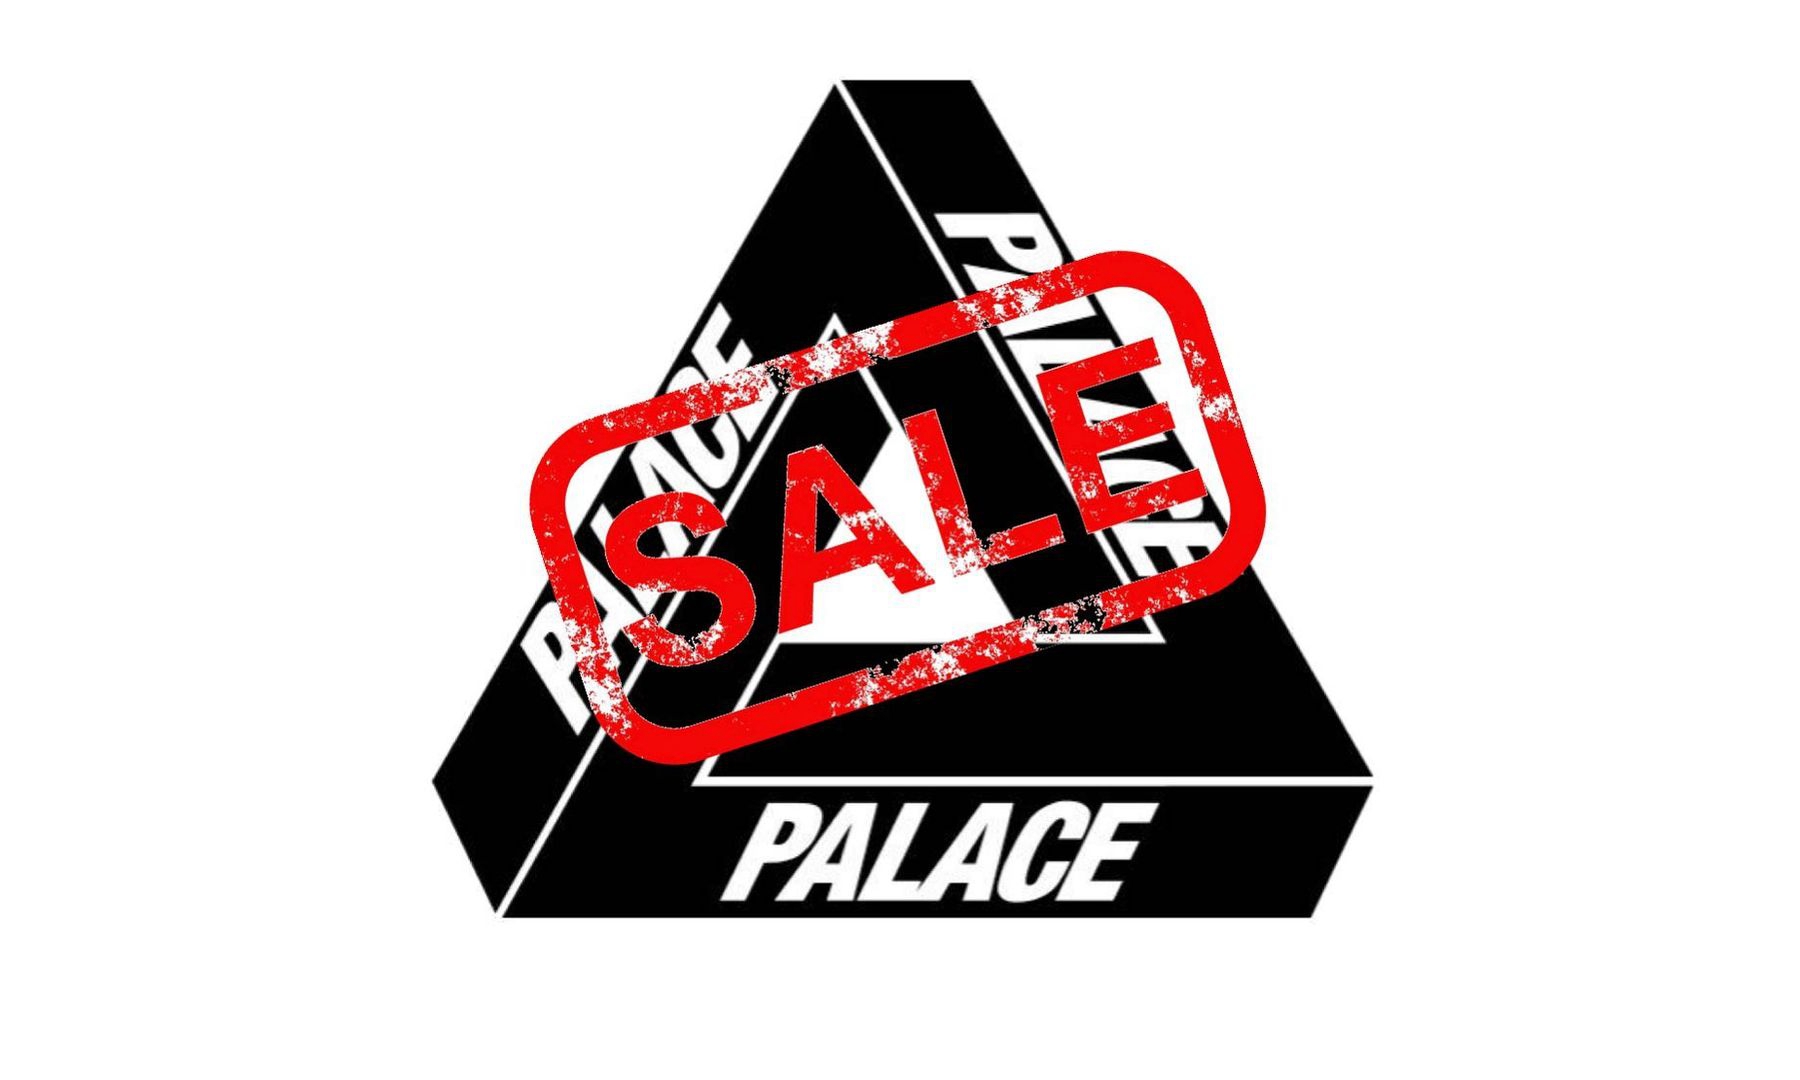 PALACE 2021 春夏季末折扣即将开催